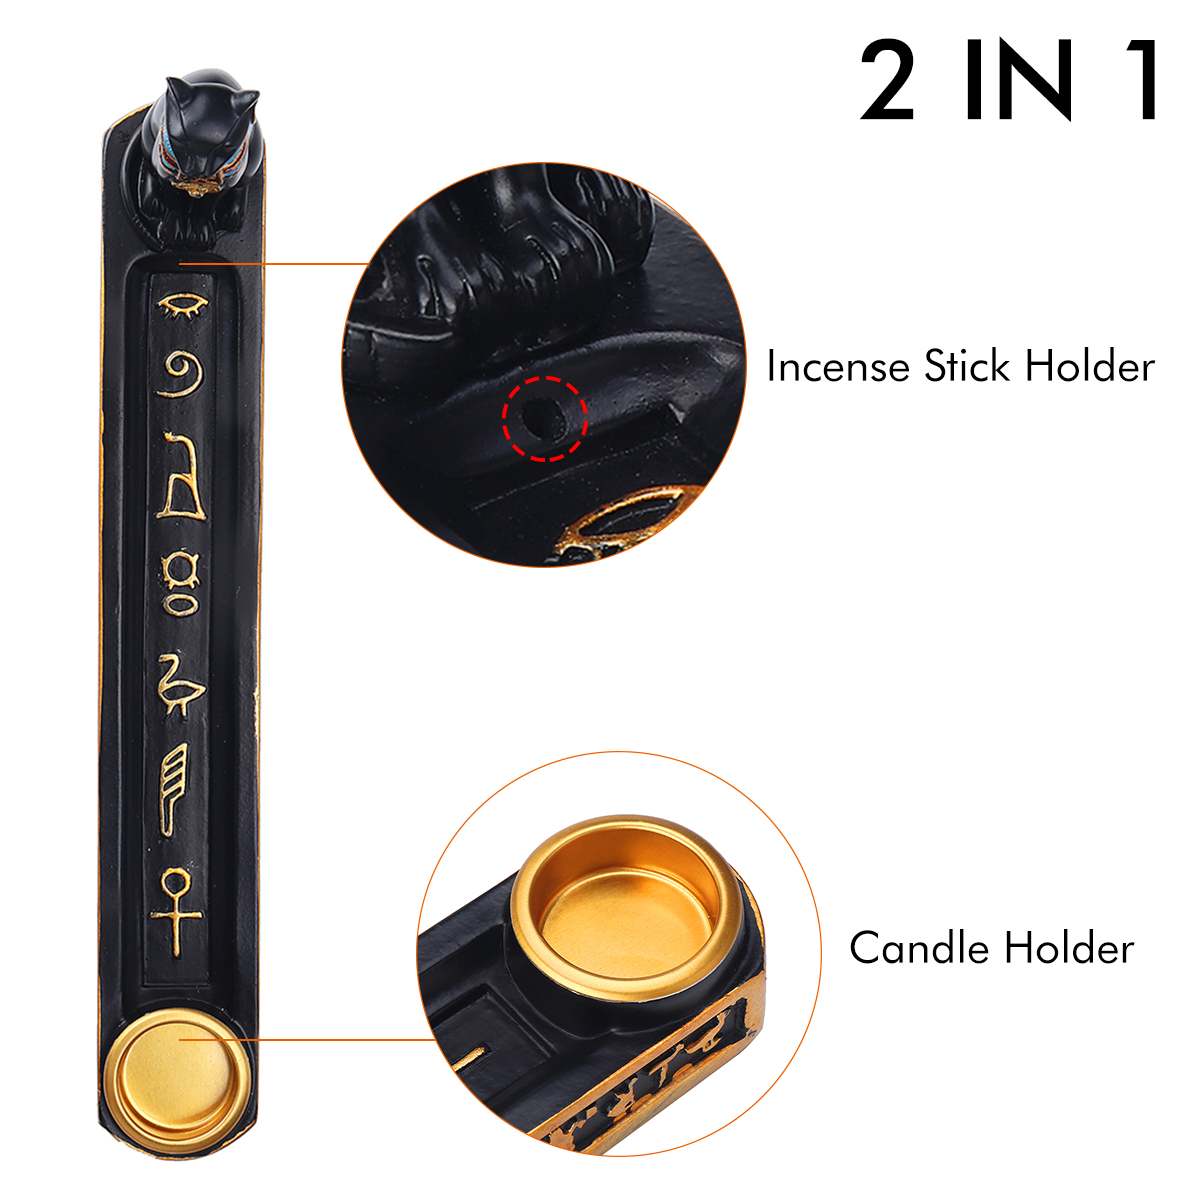 Incense burner incense holder incense holder incense holder